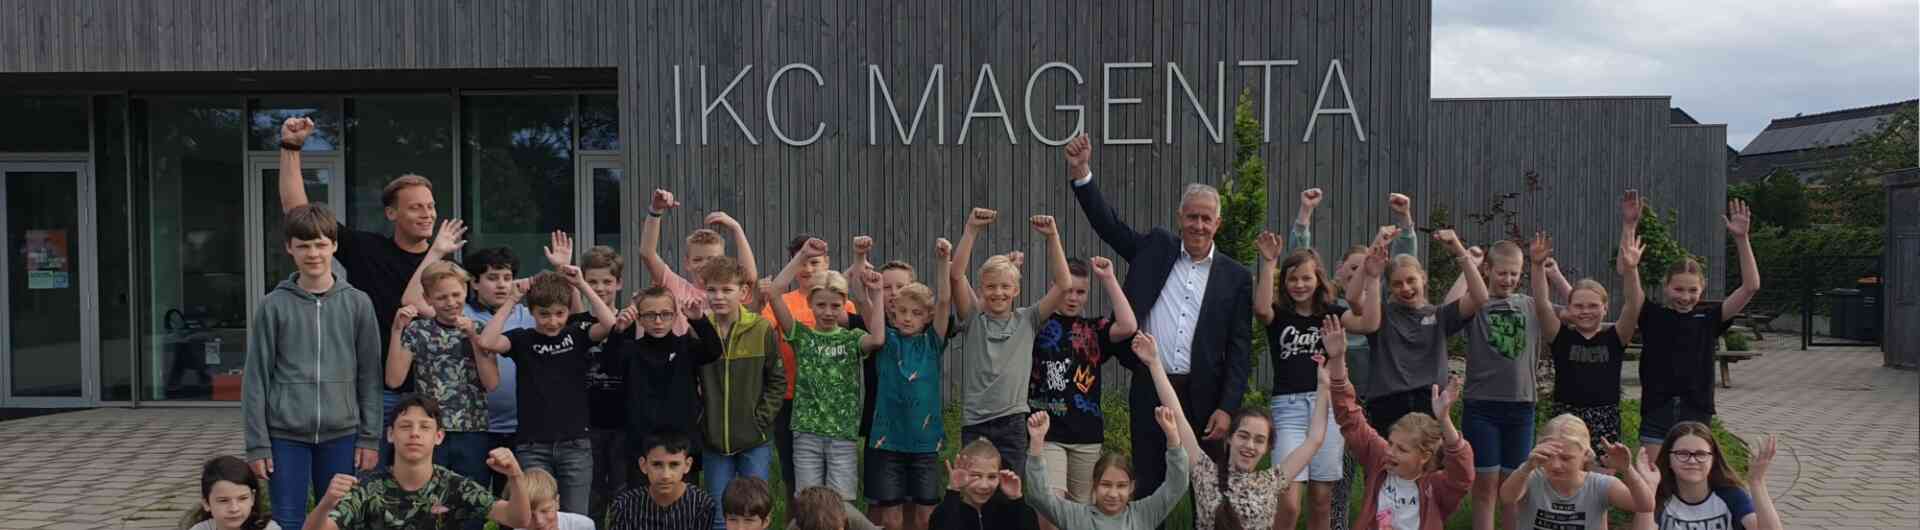 IKC Magenta uit Delden is een van de deelnemende scholen die meedoet aan de Ewasterace Twente